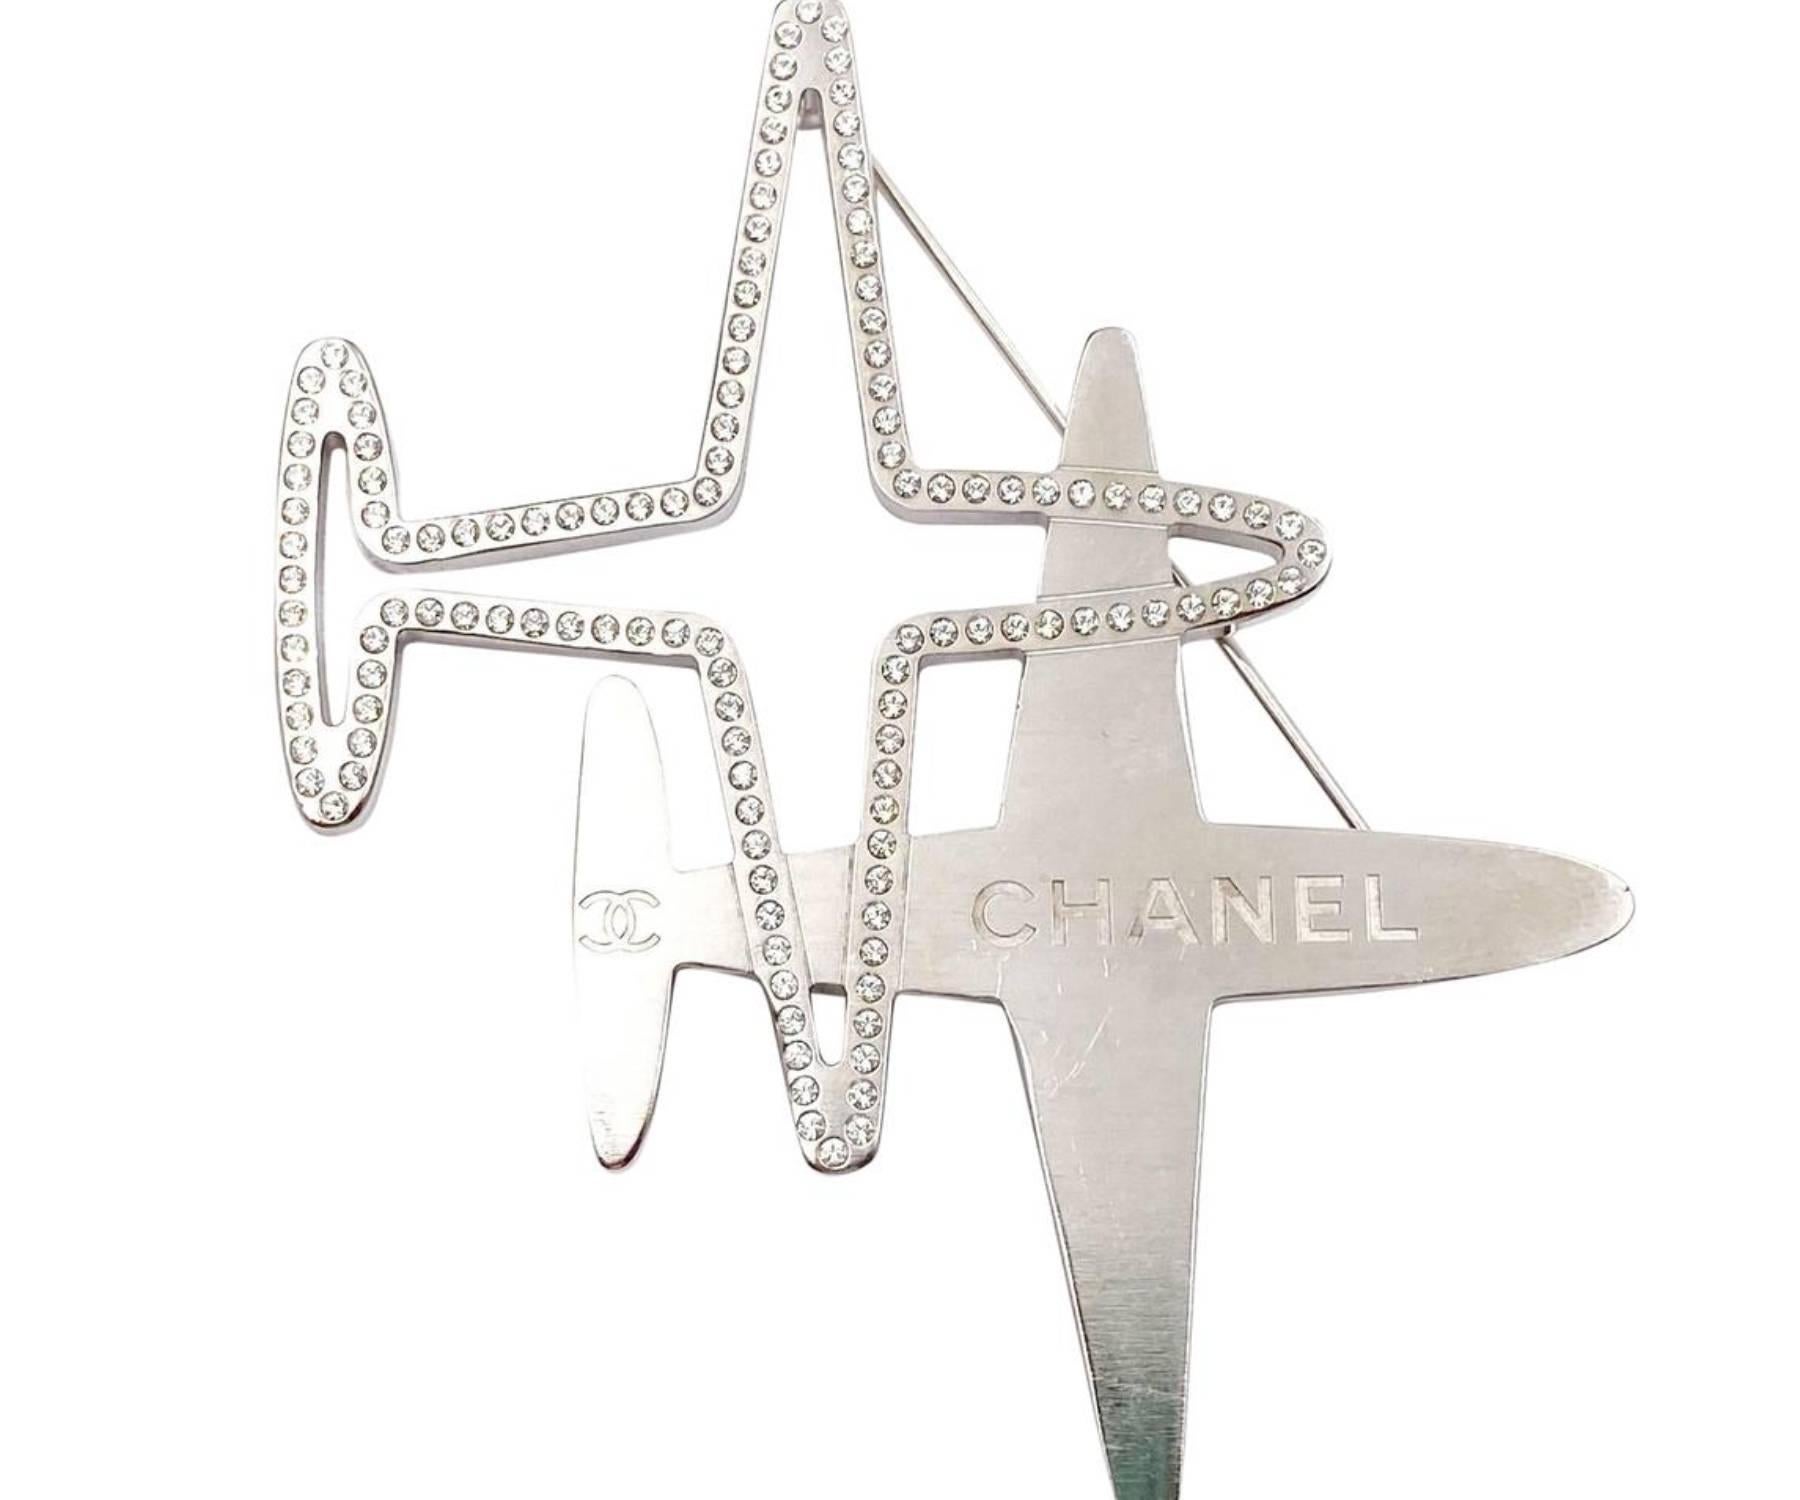 Chanel Broche CC à double planche en cristal

*Marked 16
*Fabriqué en France
*Livré avec la boîte d'origine

-Il mesure environ 3,25